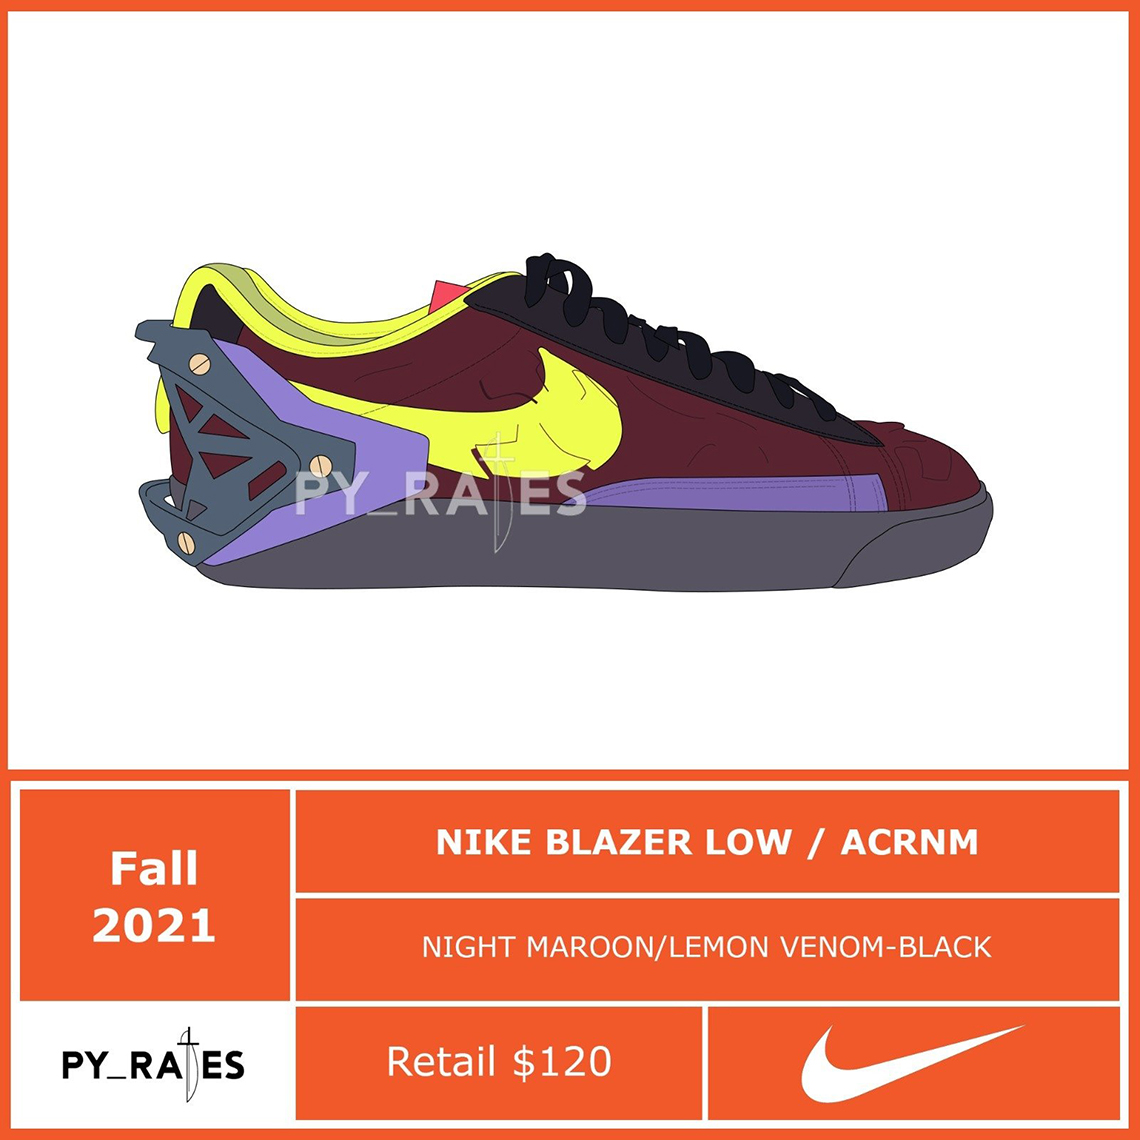 Acronym Nike Blazer Low Fall 2021 2